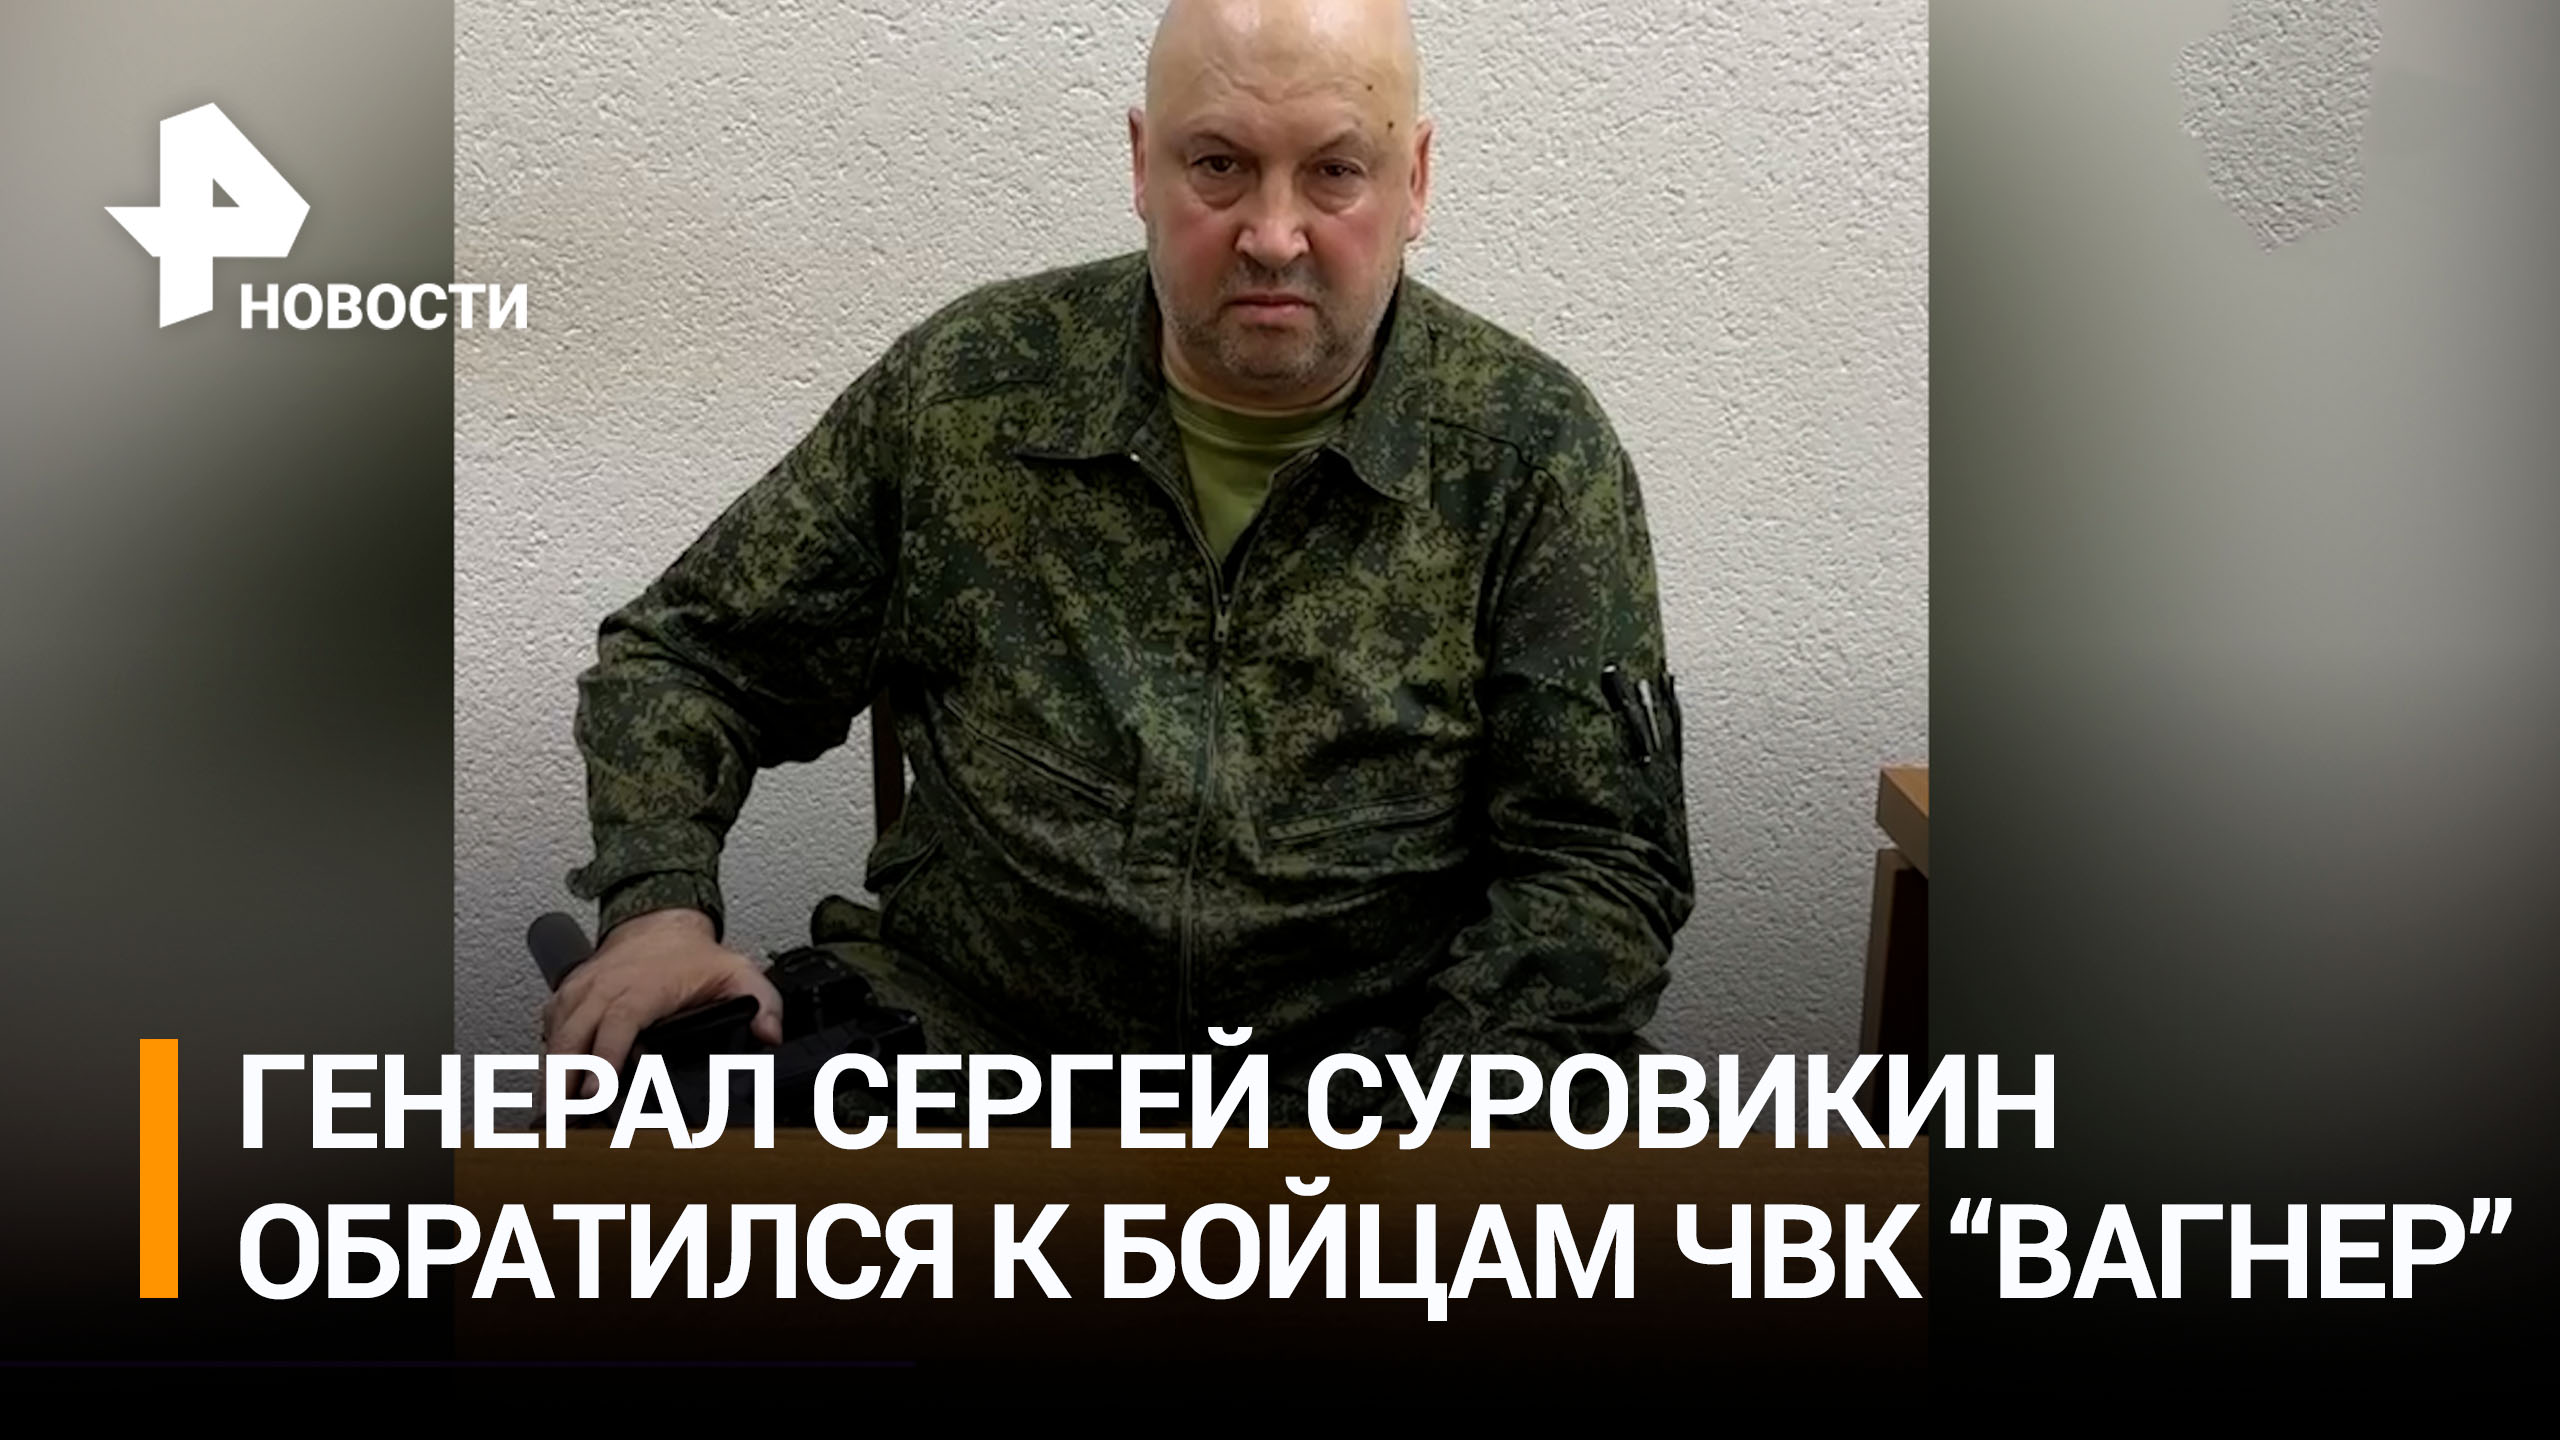 Генерал Сергей Суровикин записал обращение к бойцам ЧВК 